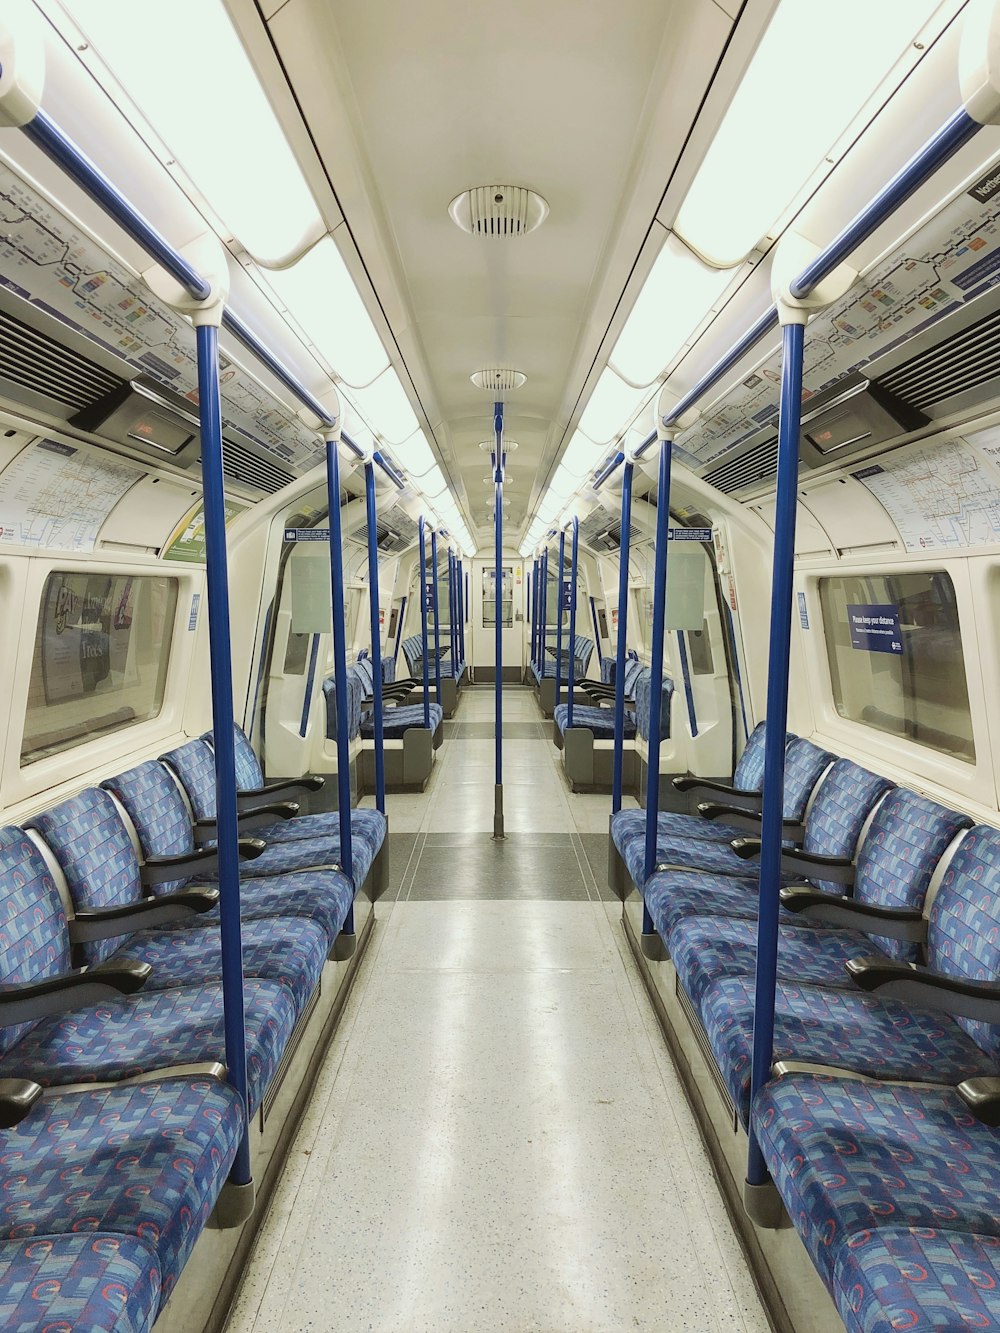 assentos de trem azuis e brancos